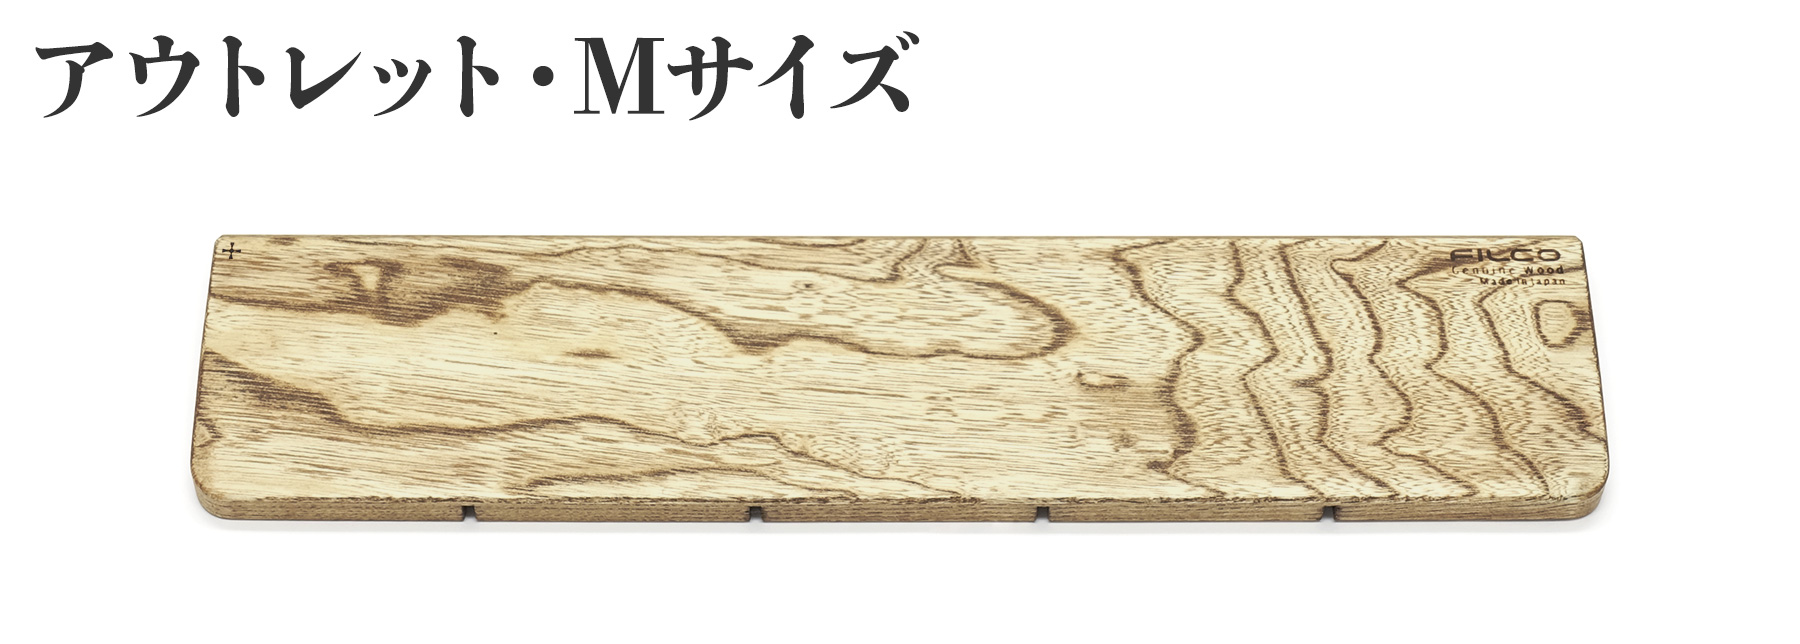 北海道産天然木 FILCO Genuine Wood Wrist Rest M size【アウトレット品】 通常価格 3,980円⇒1,001円引き！2,979円